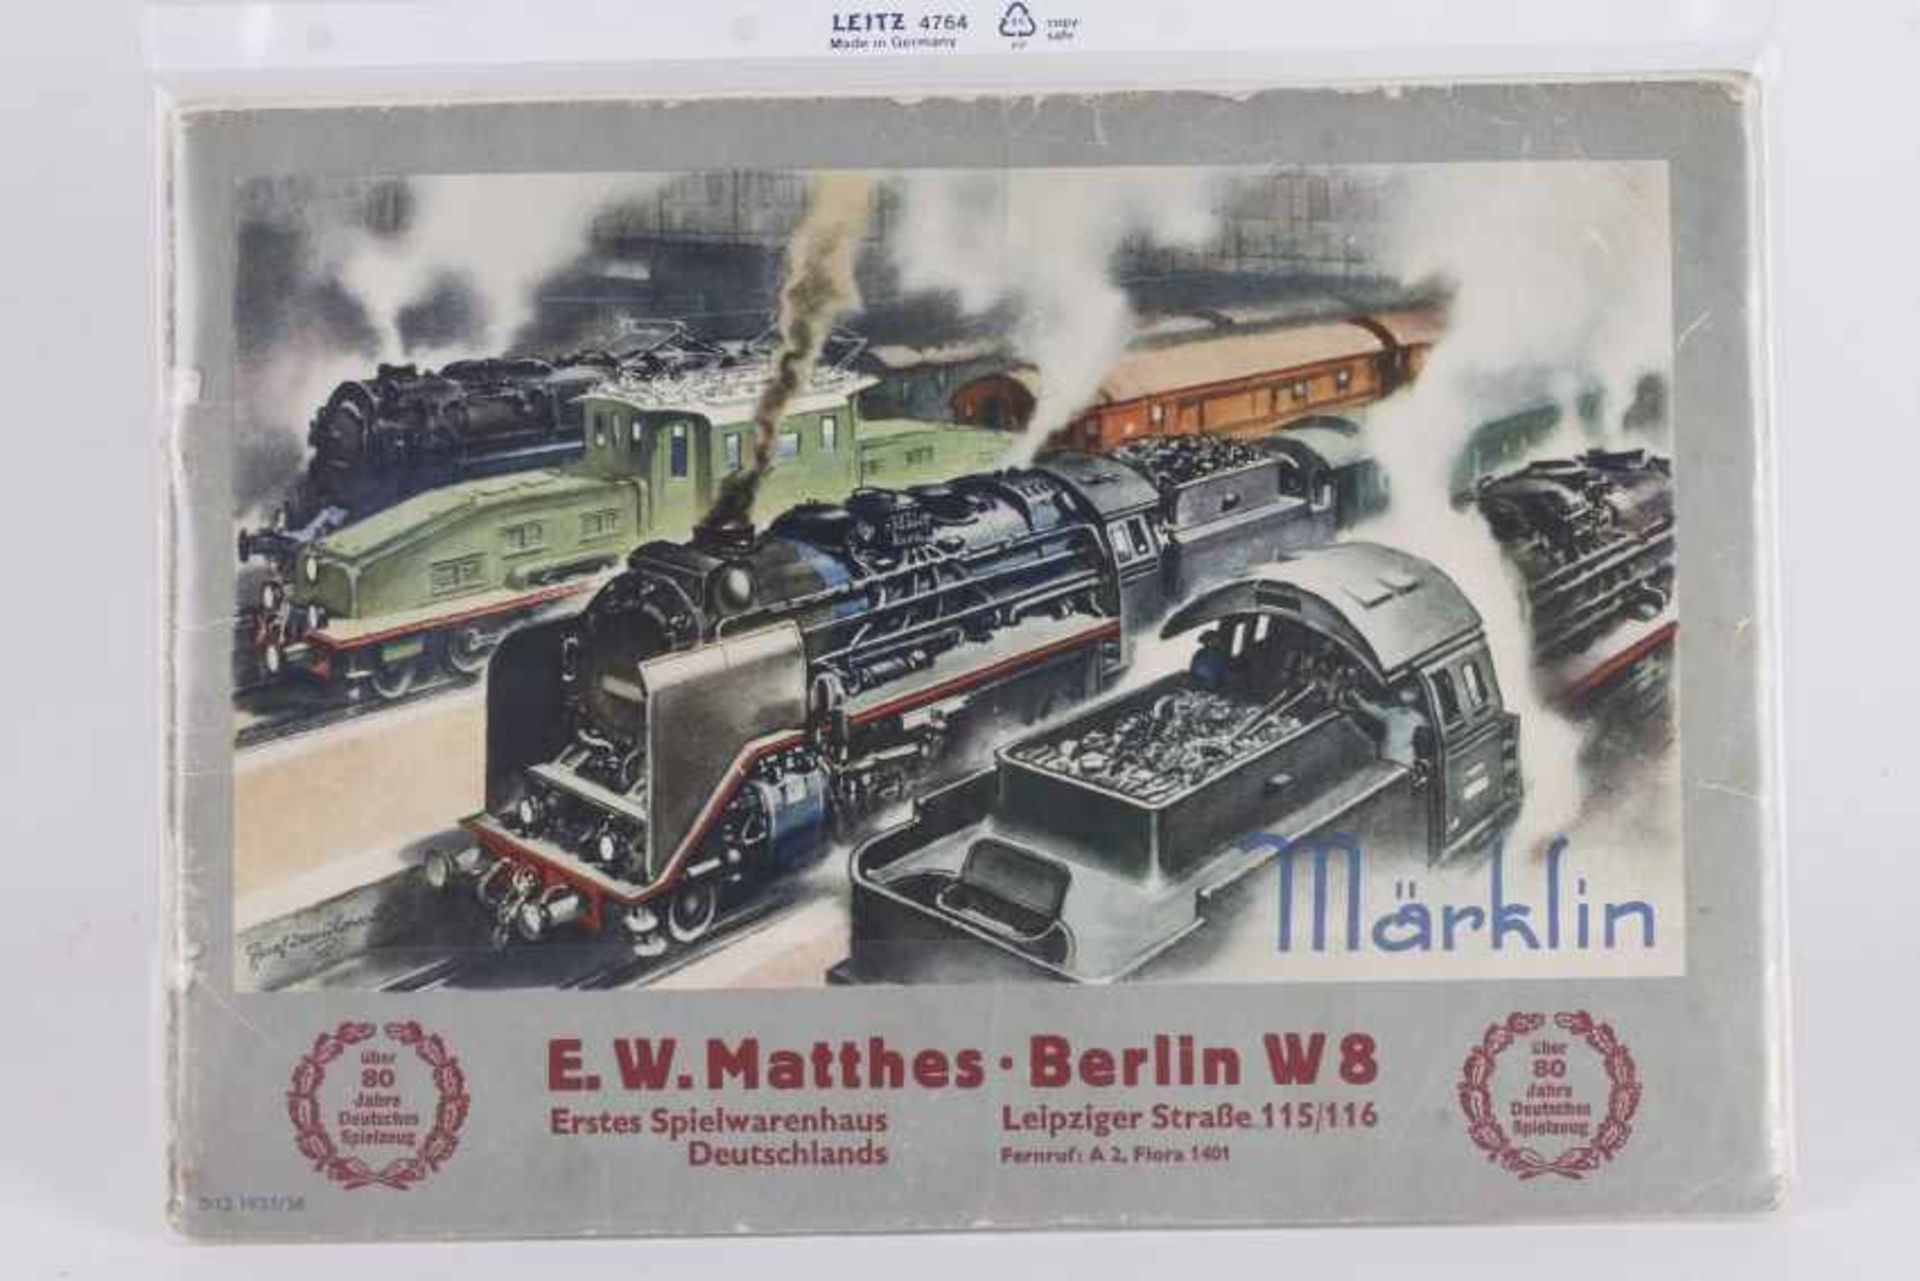 Märklin Katalog D 12 1935/36Märklin Katalog D 12 1935/36, deutscher Text, Preise in Reichsmark,